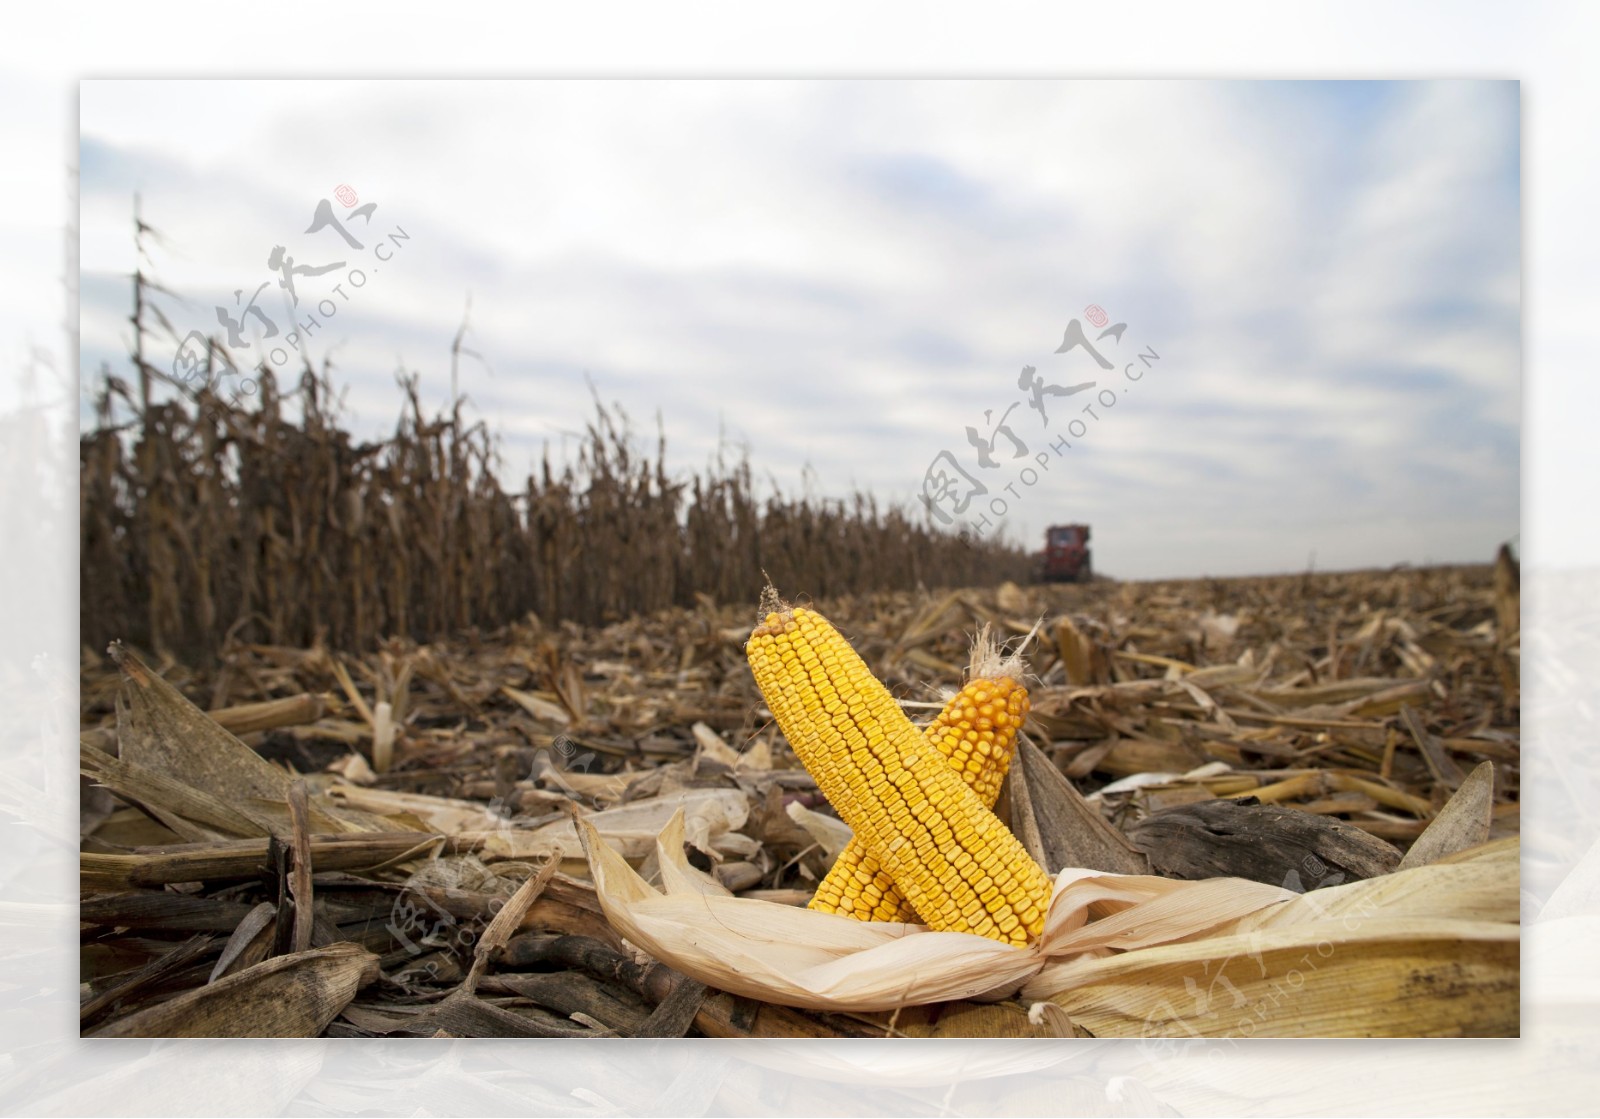 玉米地摄影图片